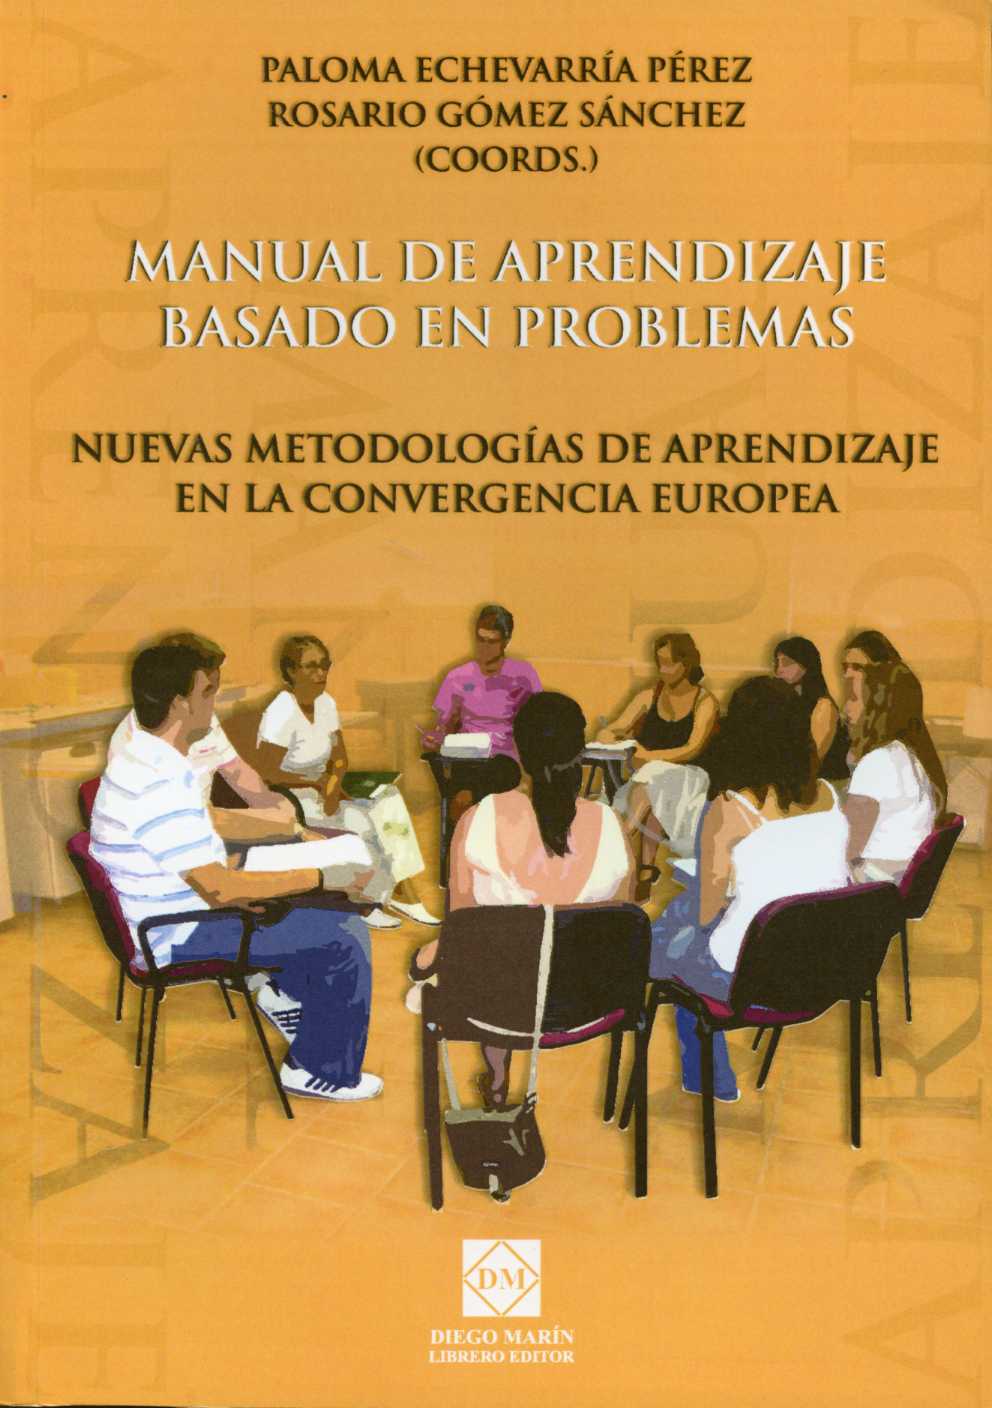 Manual de Aprendizaje Basado en Problemas. Nuevas Metodologías de Aprendizaje en la Convergencia Europea.-0